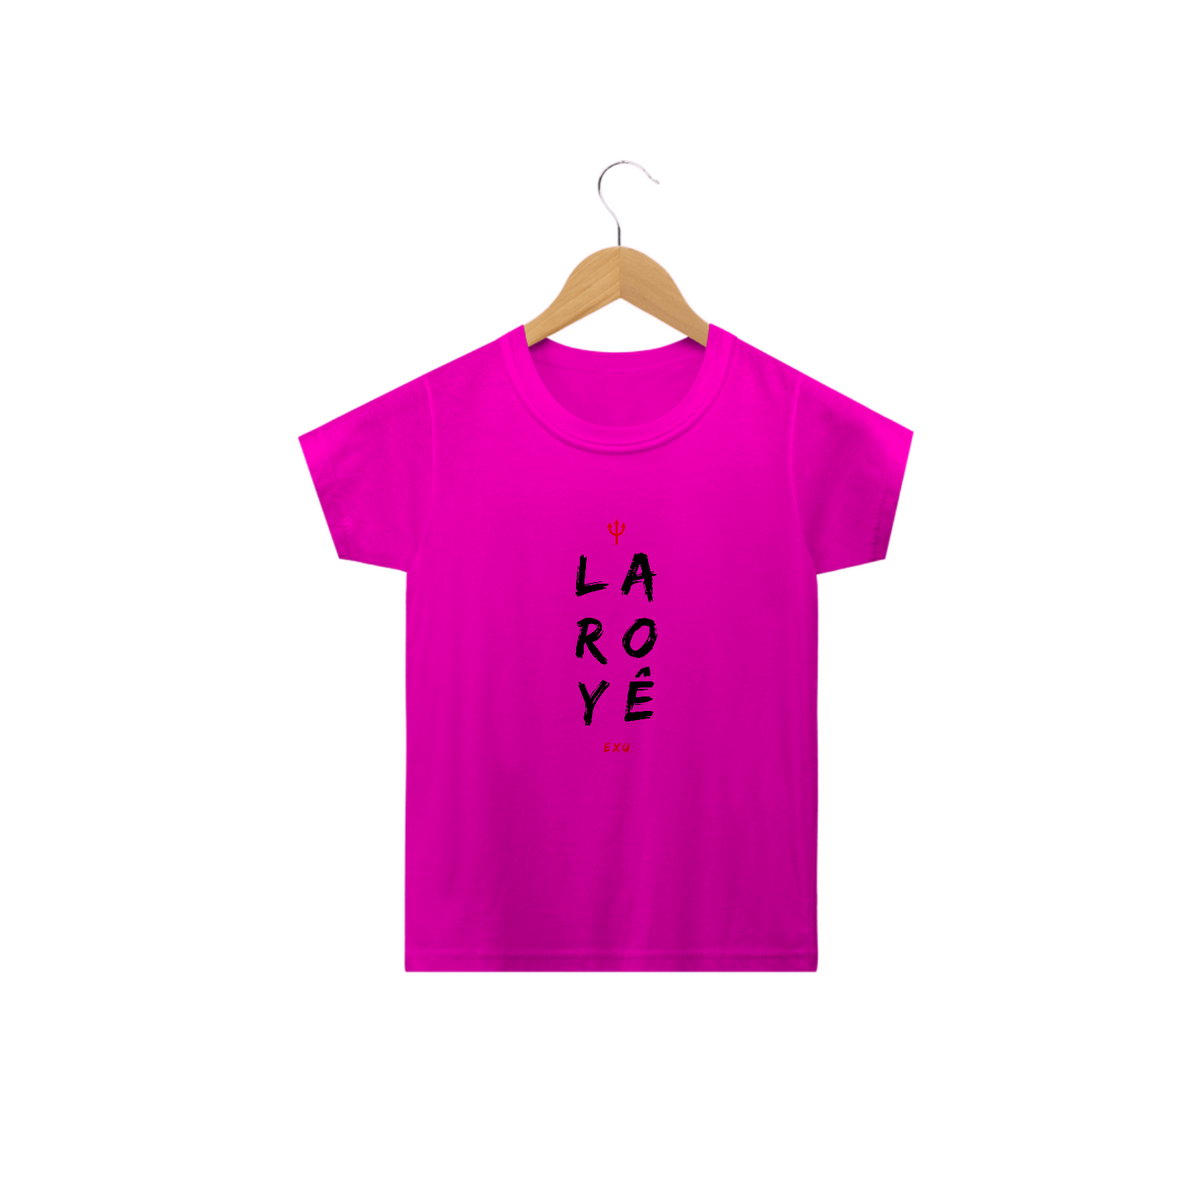 Nome do produto: Camiseta Exu Infantil - Saudação Laroyê Exu 100% Algodão Fio 24.1, 145g costura simples e gola ribana